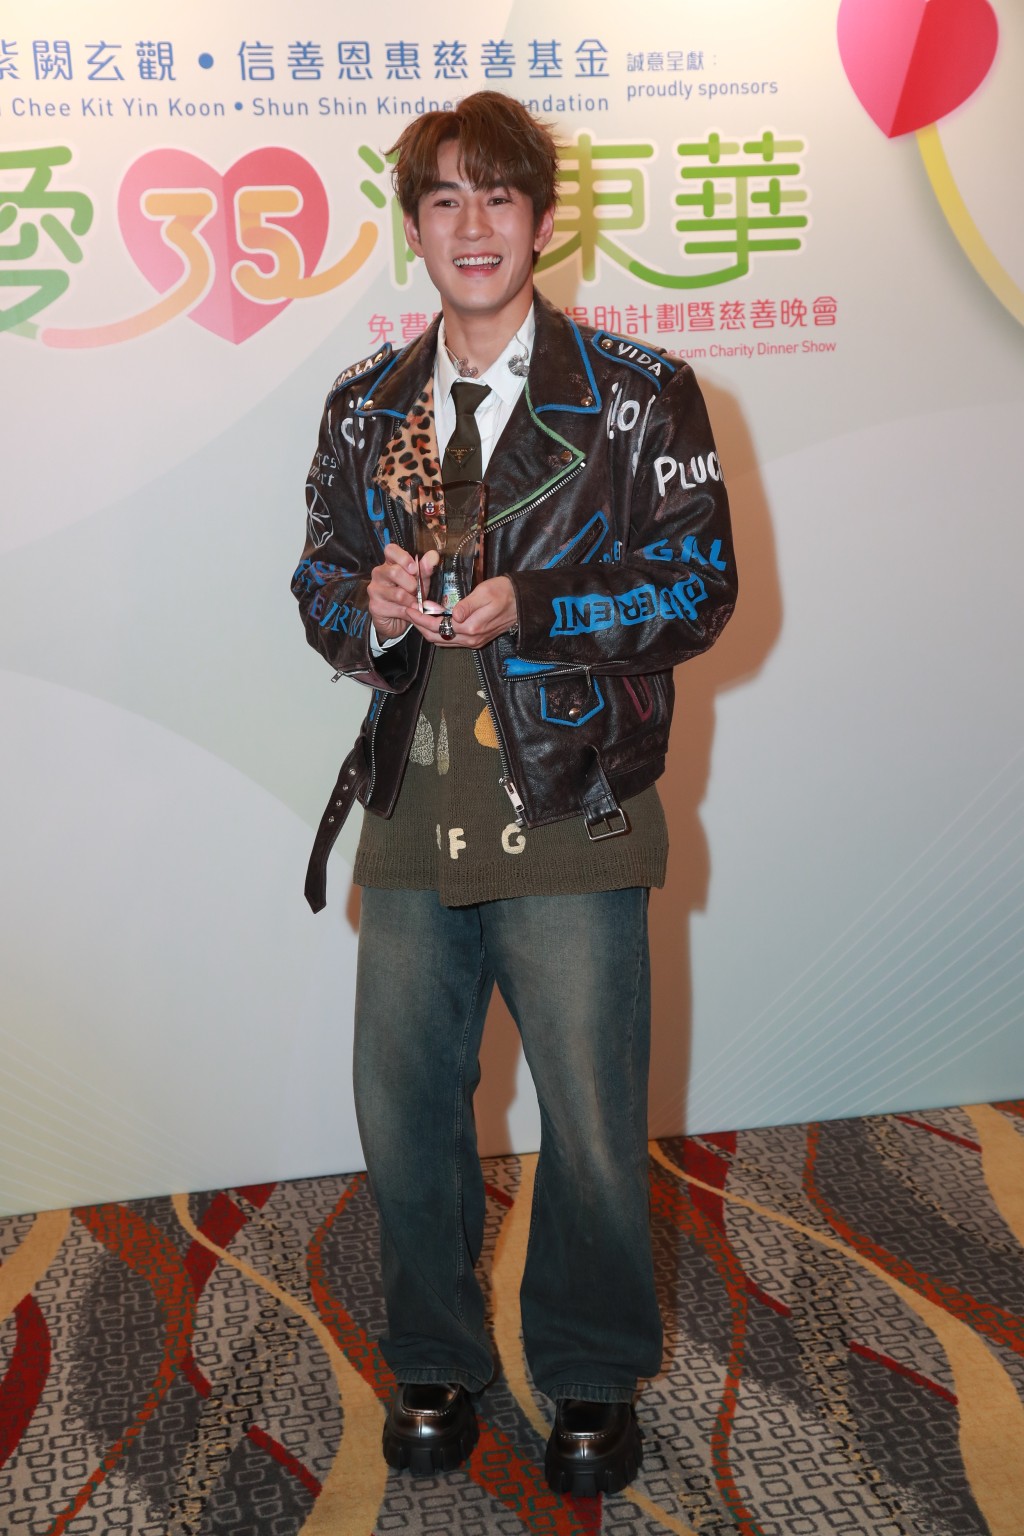 魏浚笙穿一件豹纹嘻哈黑夹克衫出席。